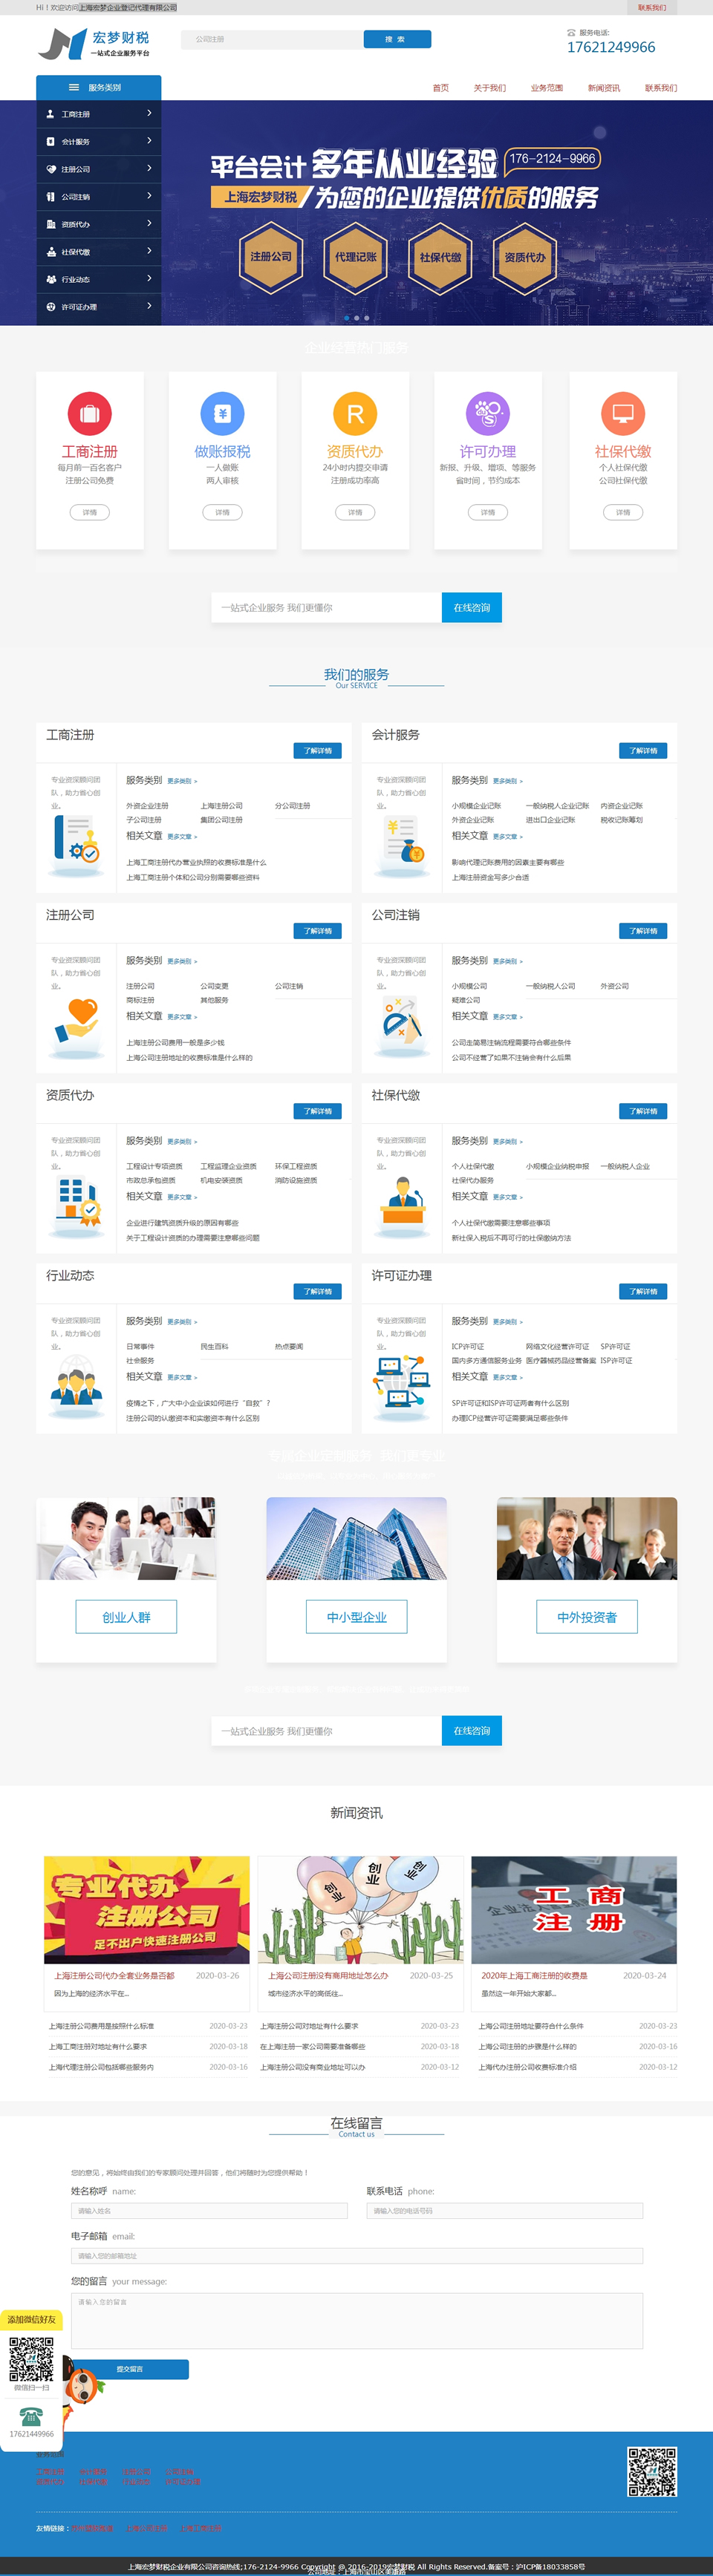 上海宏梦企业登记代理有限公司